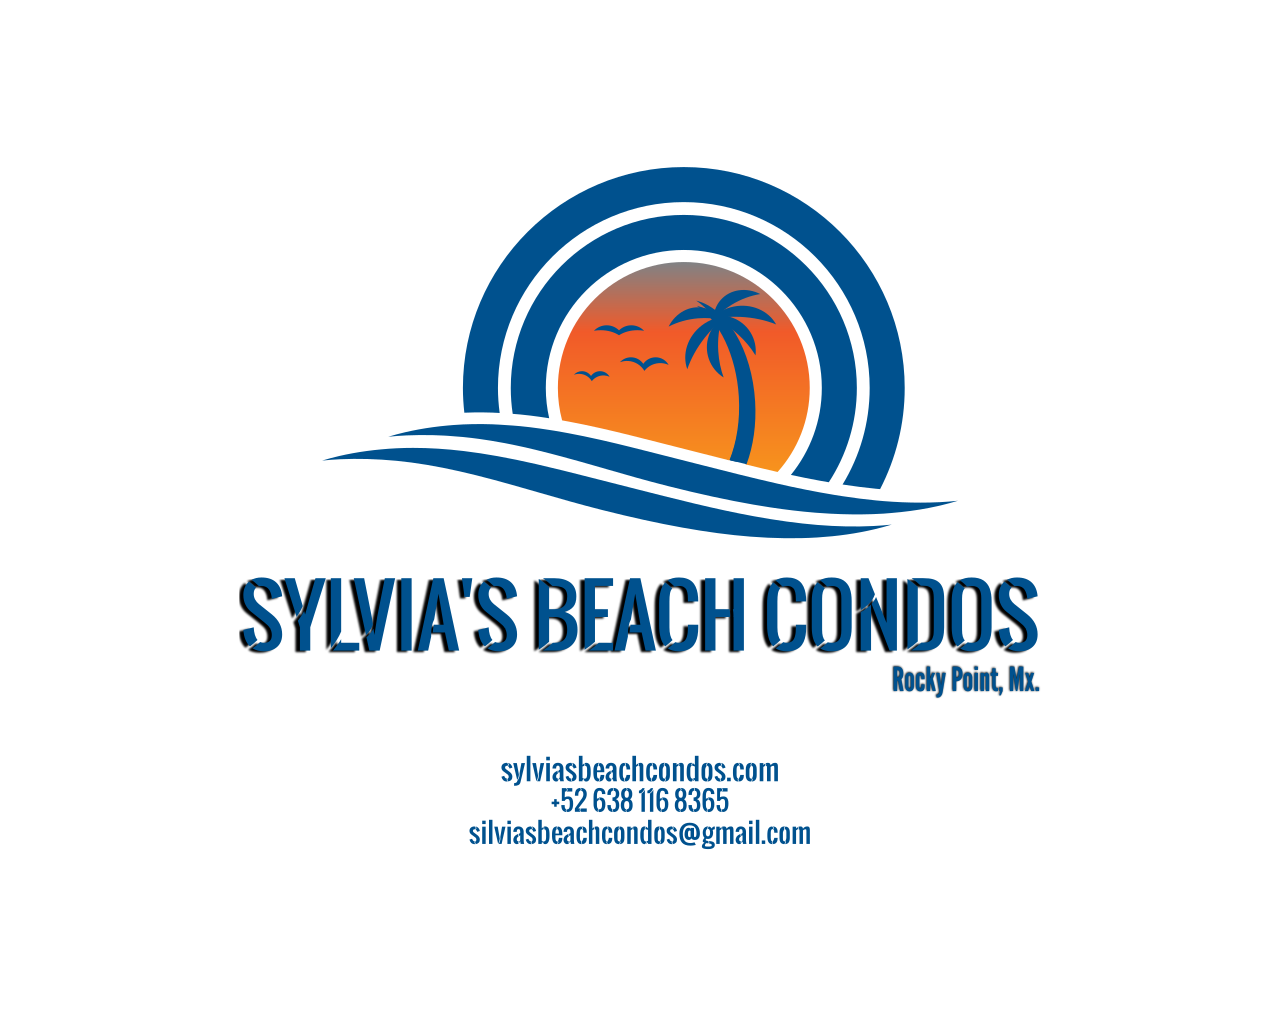 Sylvias Beach Condos